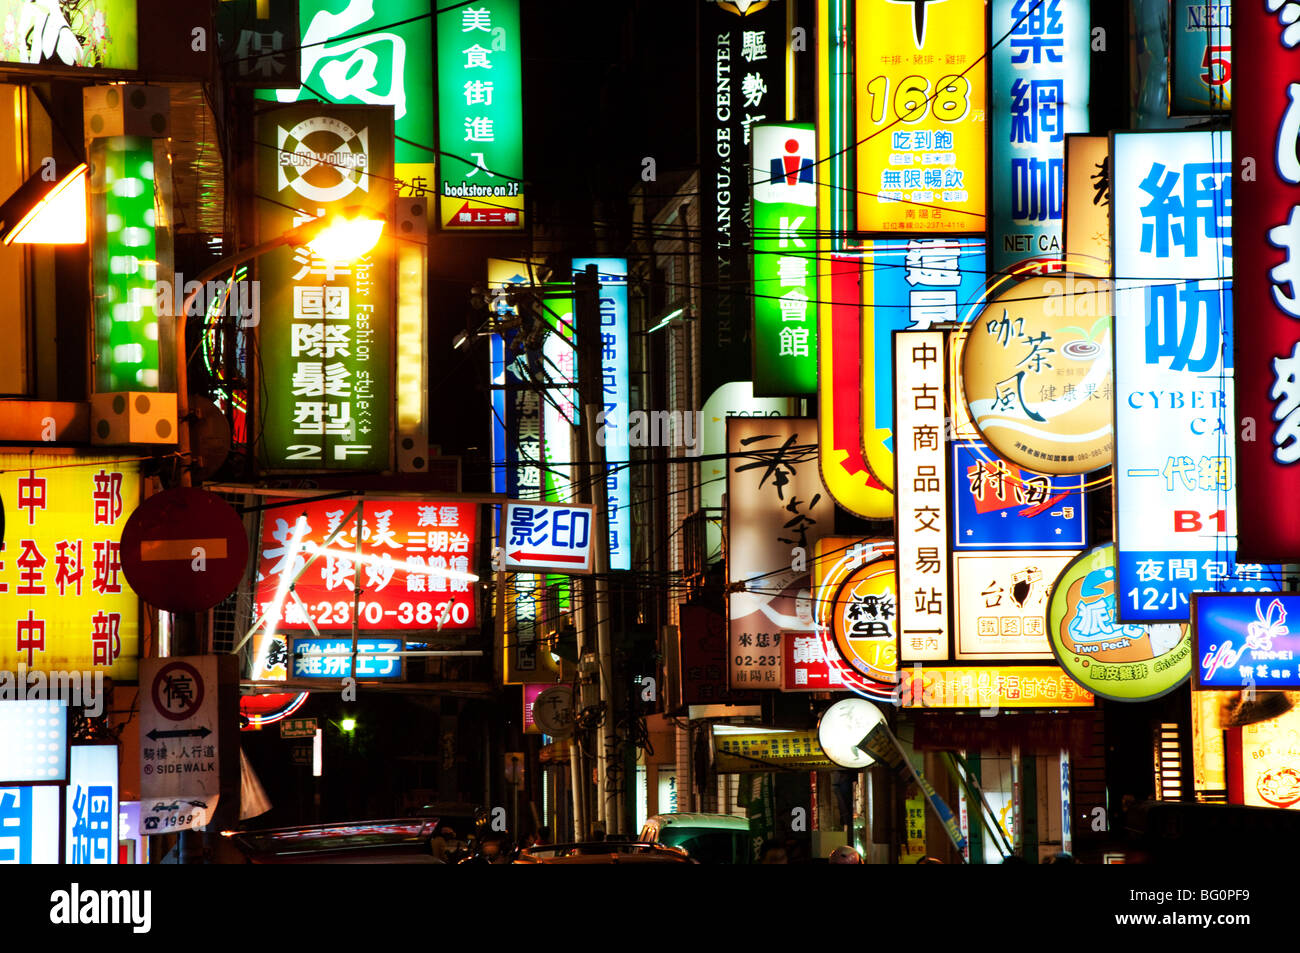 Neon signs at night, Taipei, Taiwan, Asia Stock Photo